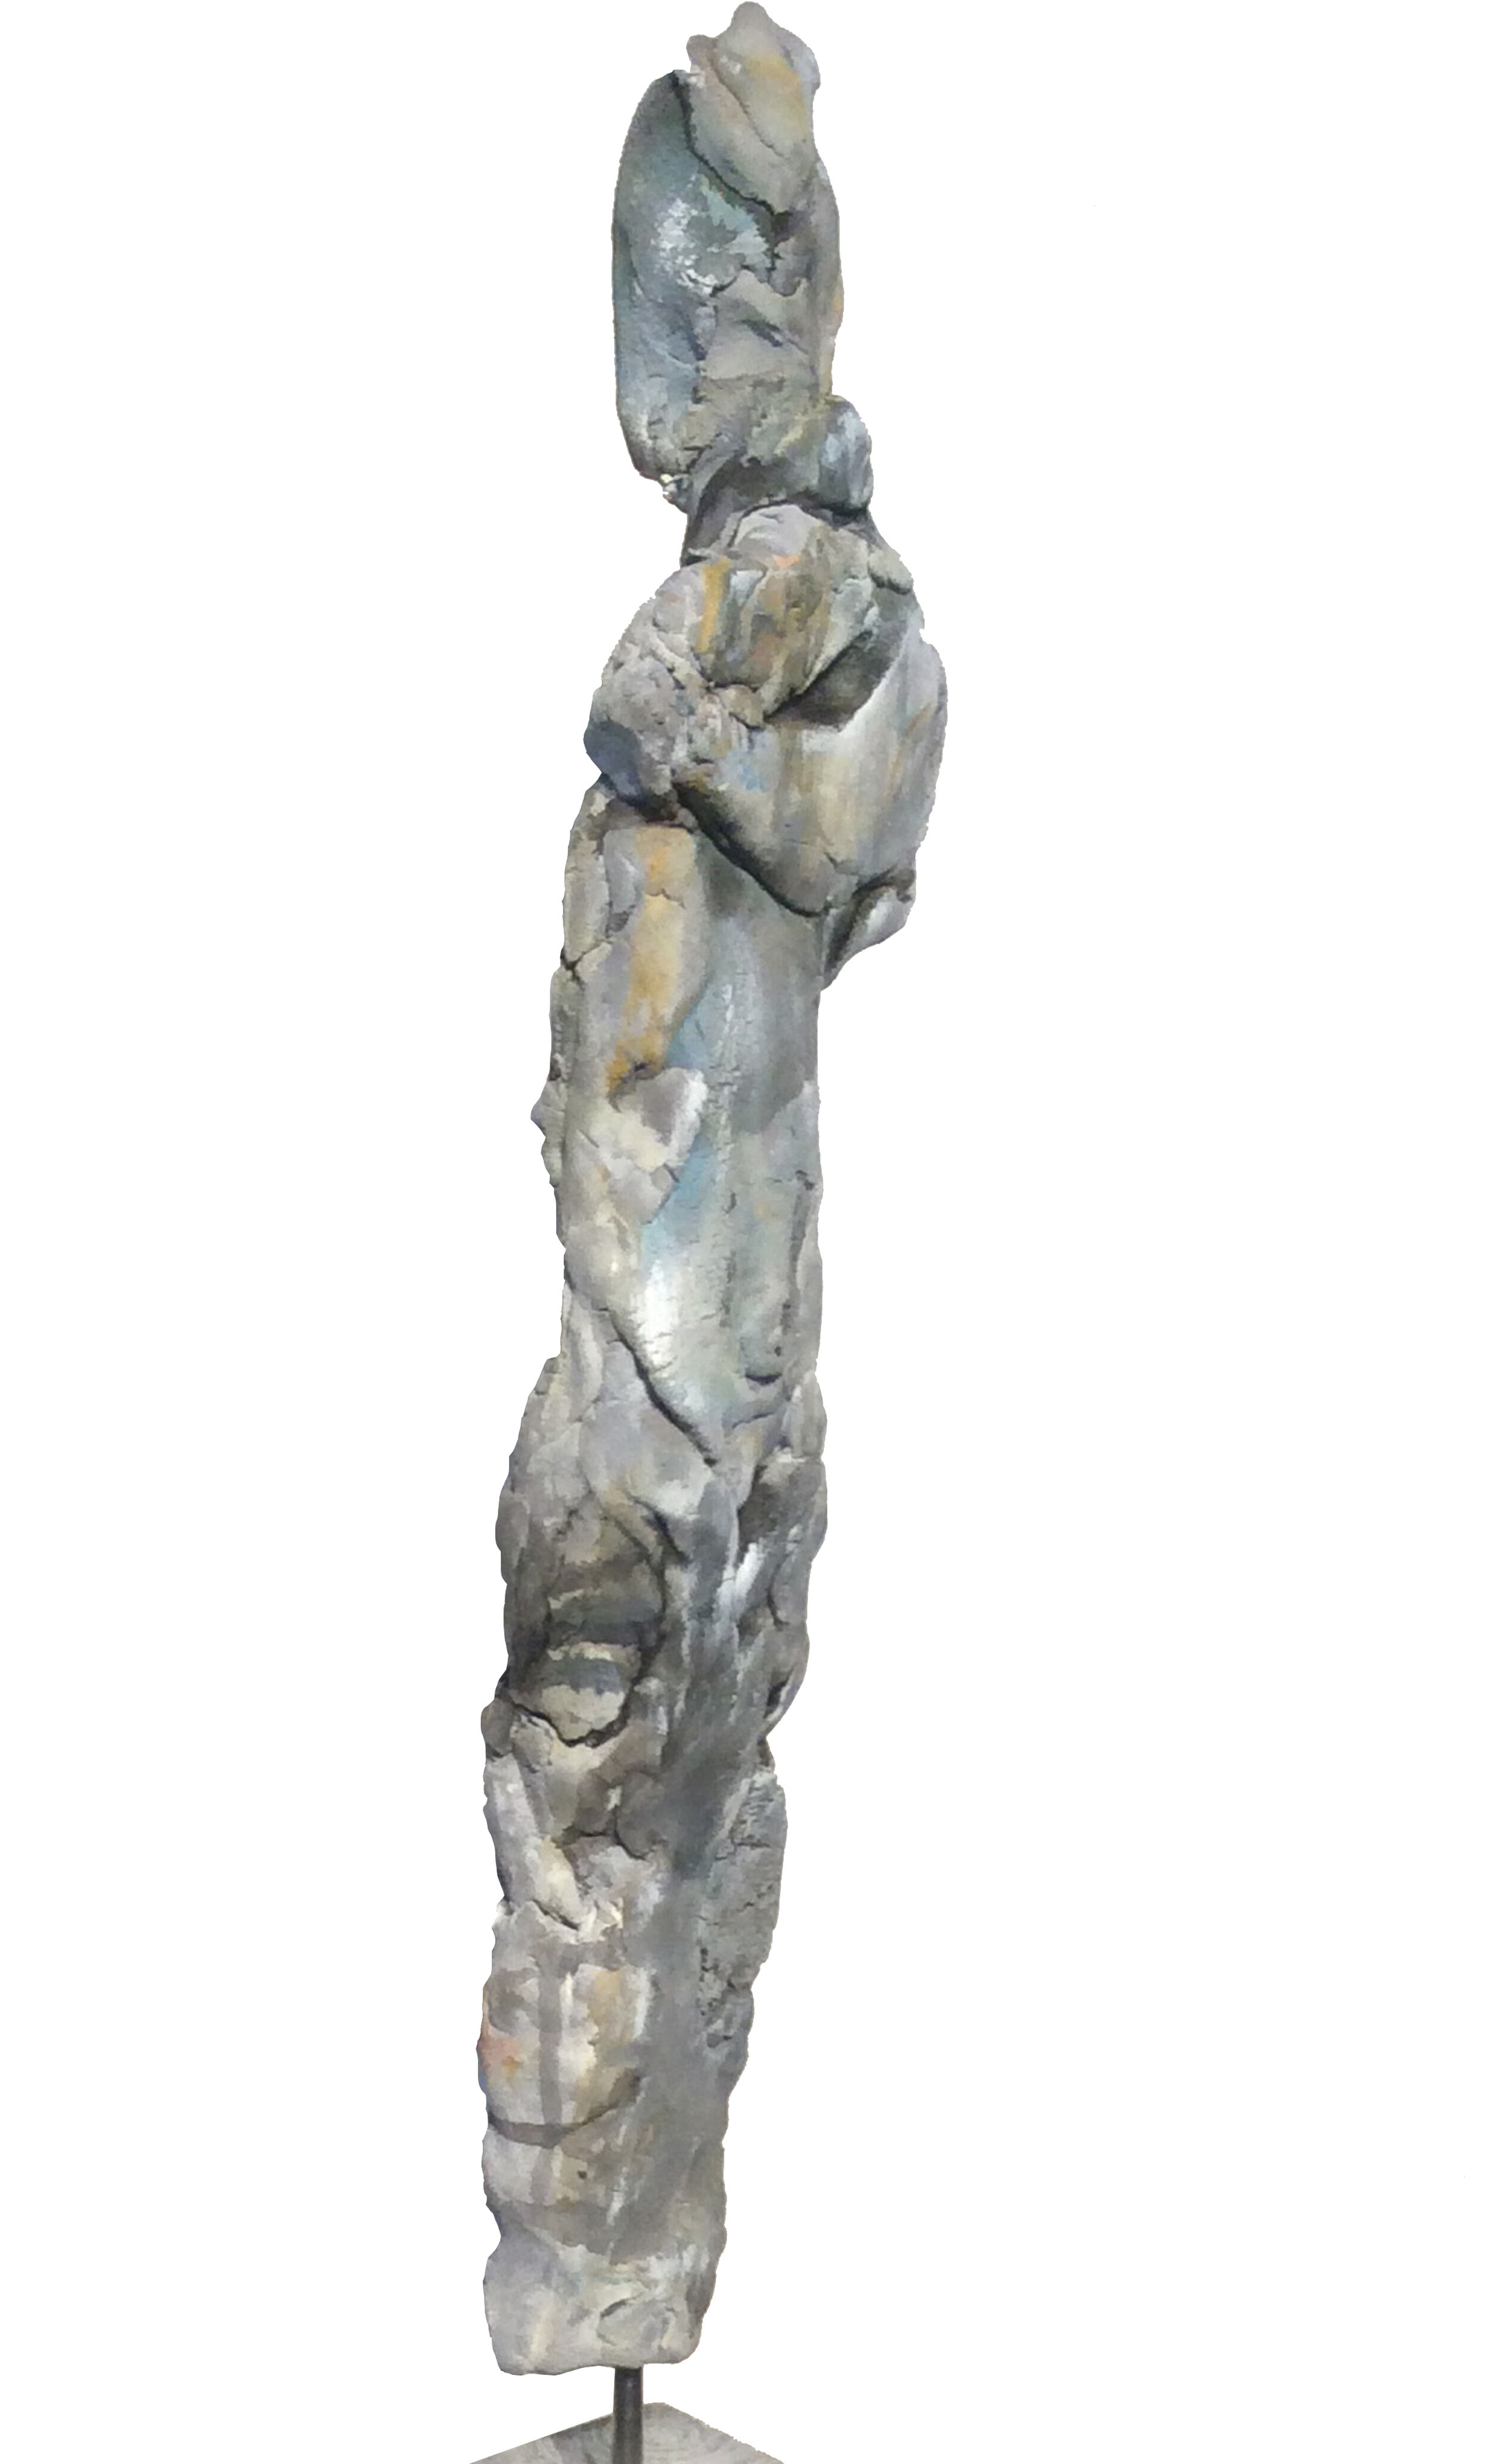 Skulptur "Figurine VI" (2019)